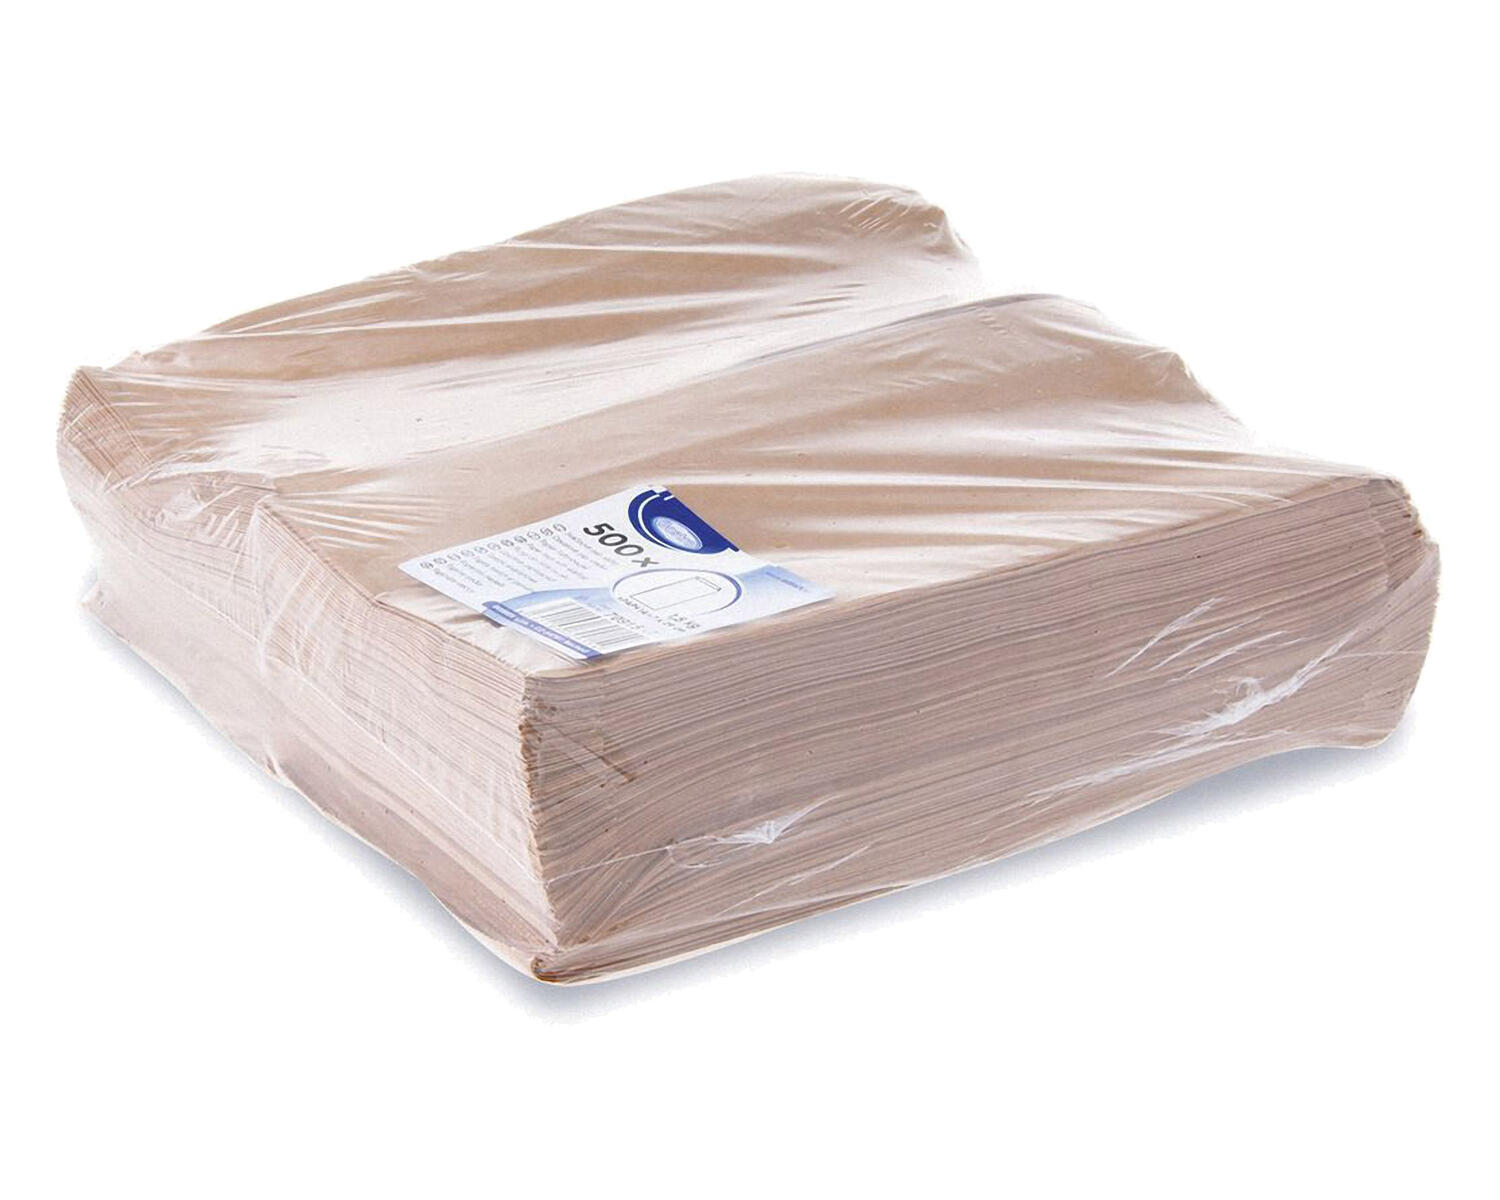 Papierfaltenbeutel Papiertten braun 14+7 x 29 cm fr ca. 1,5kg Inhalt, 500 Stk.